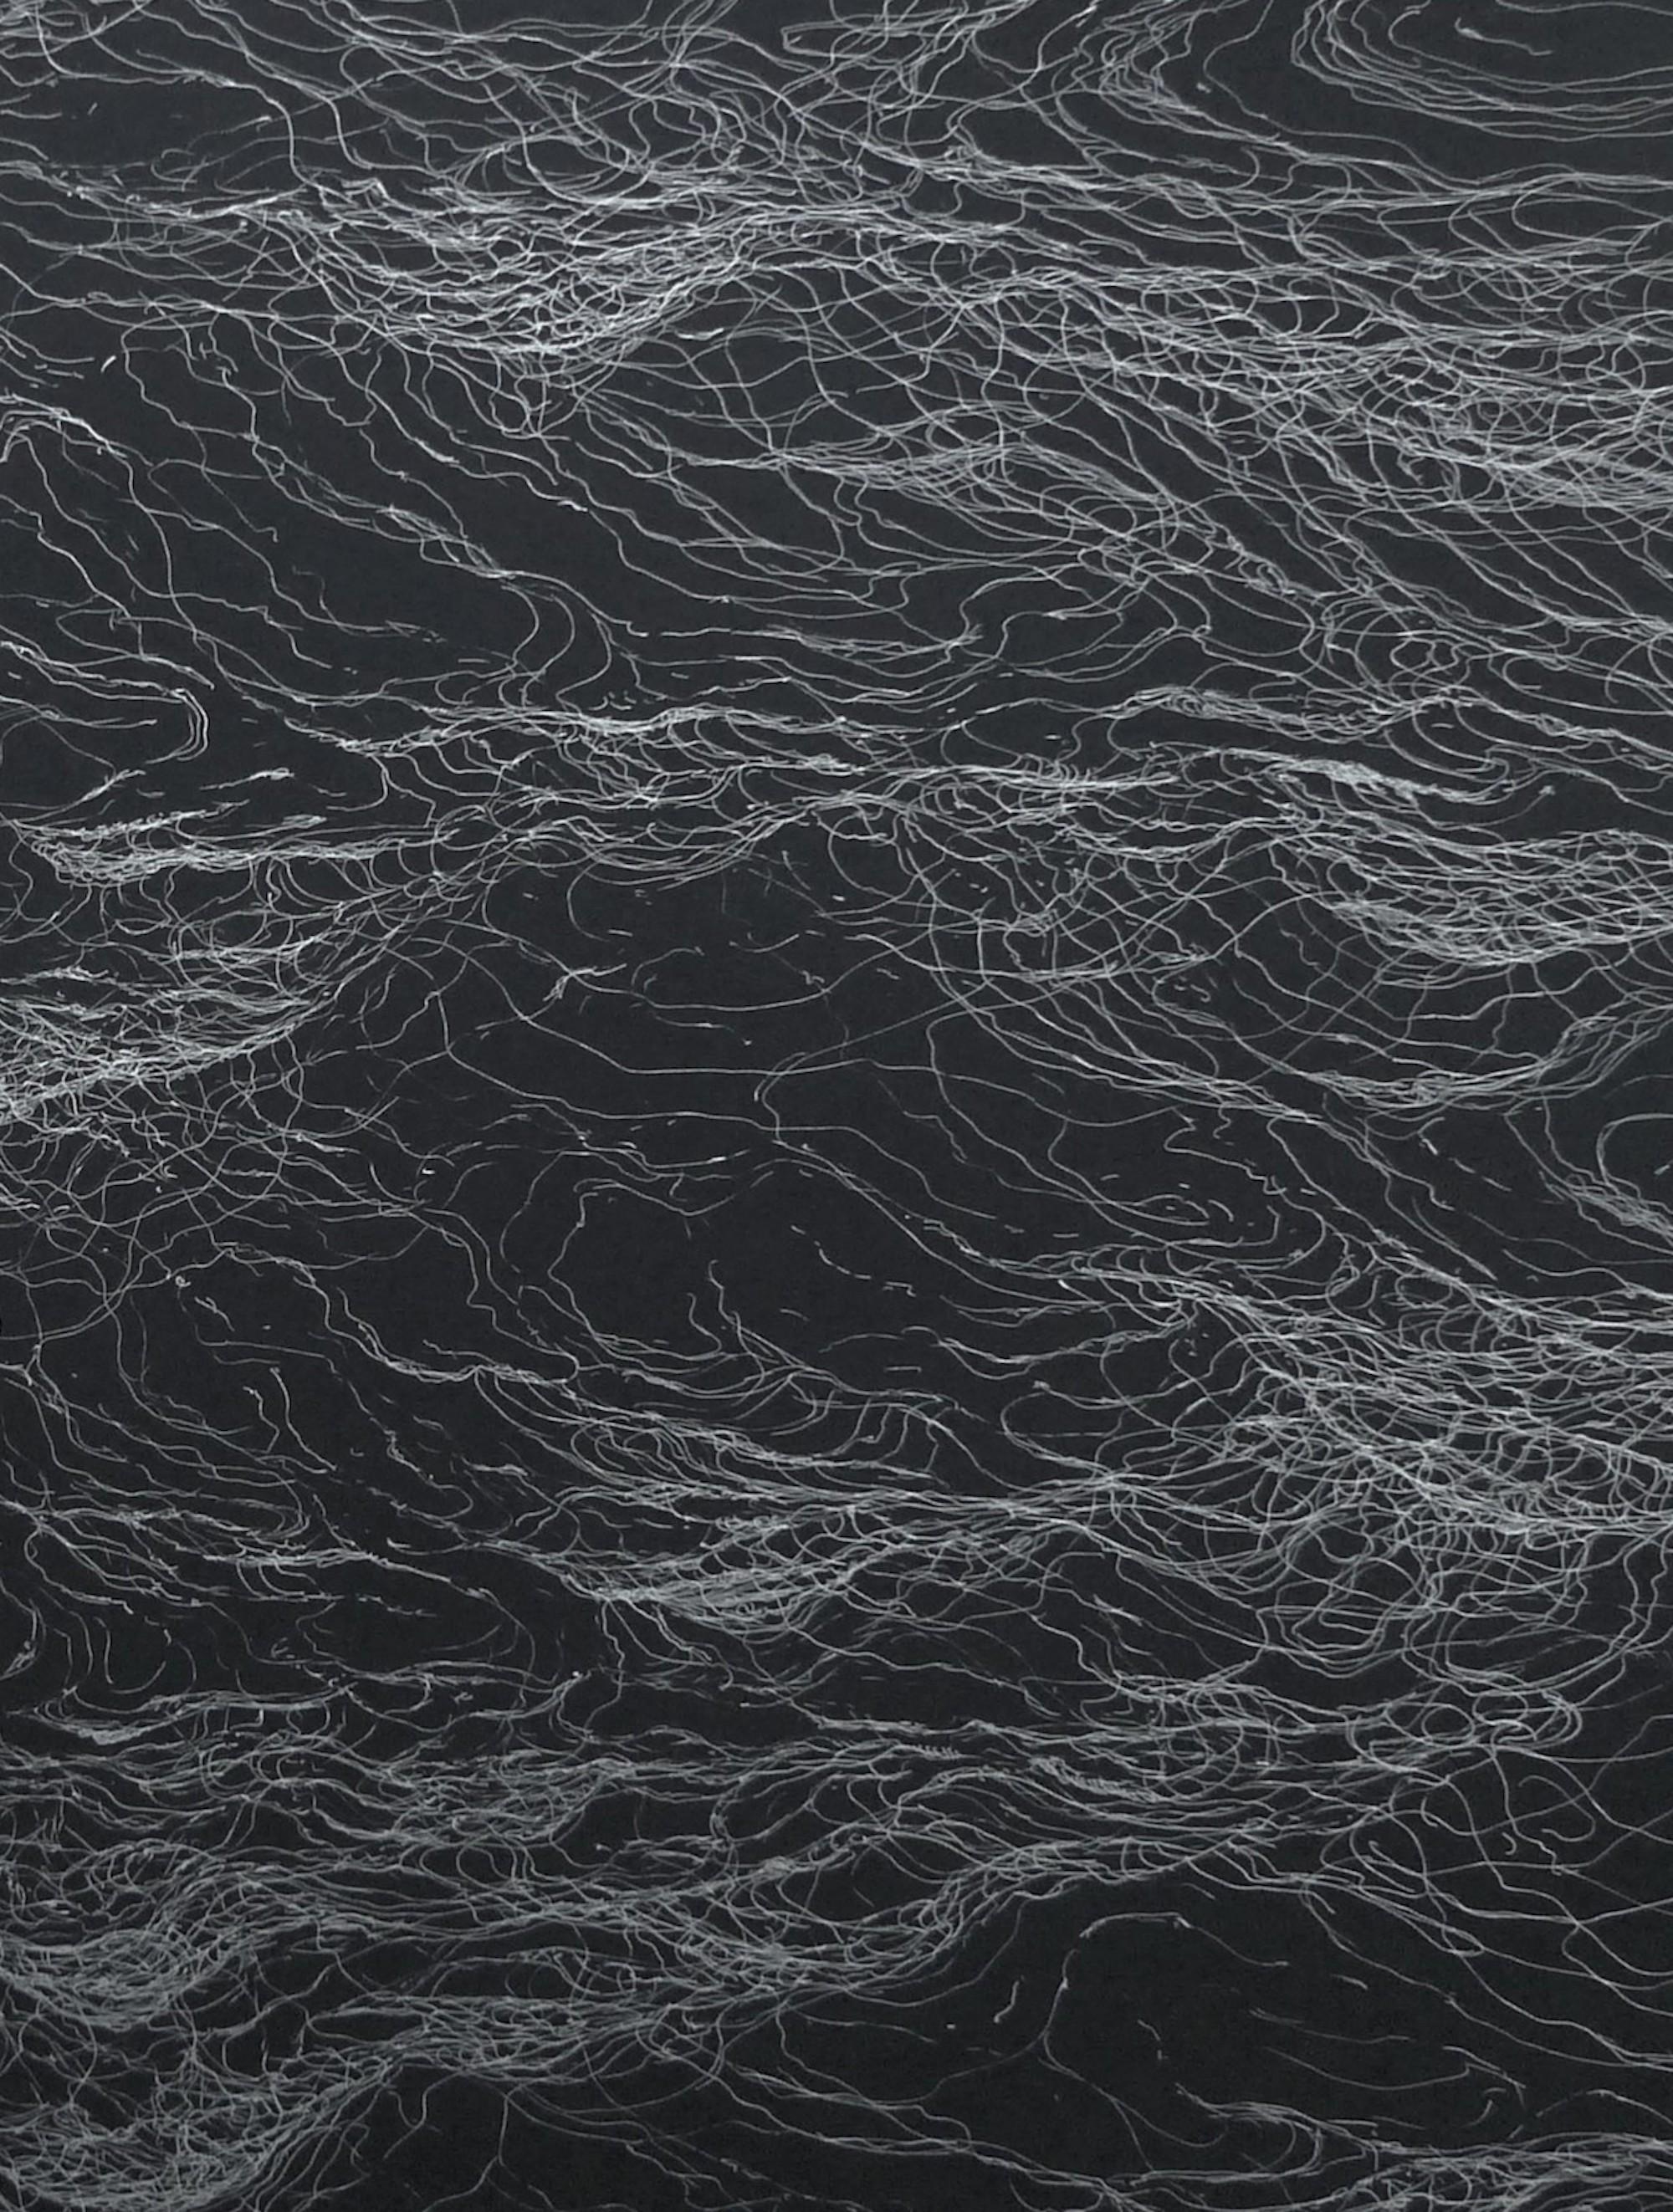 Infinity by Franco Salas Borquez - Seascape, ocean, waves, black, silver ink 3